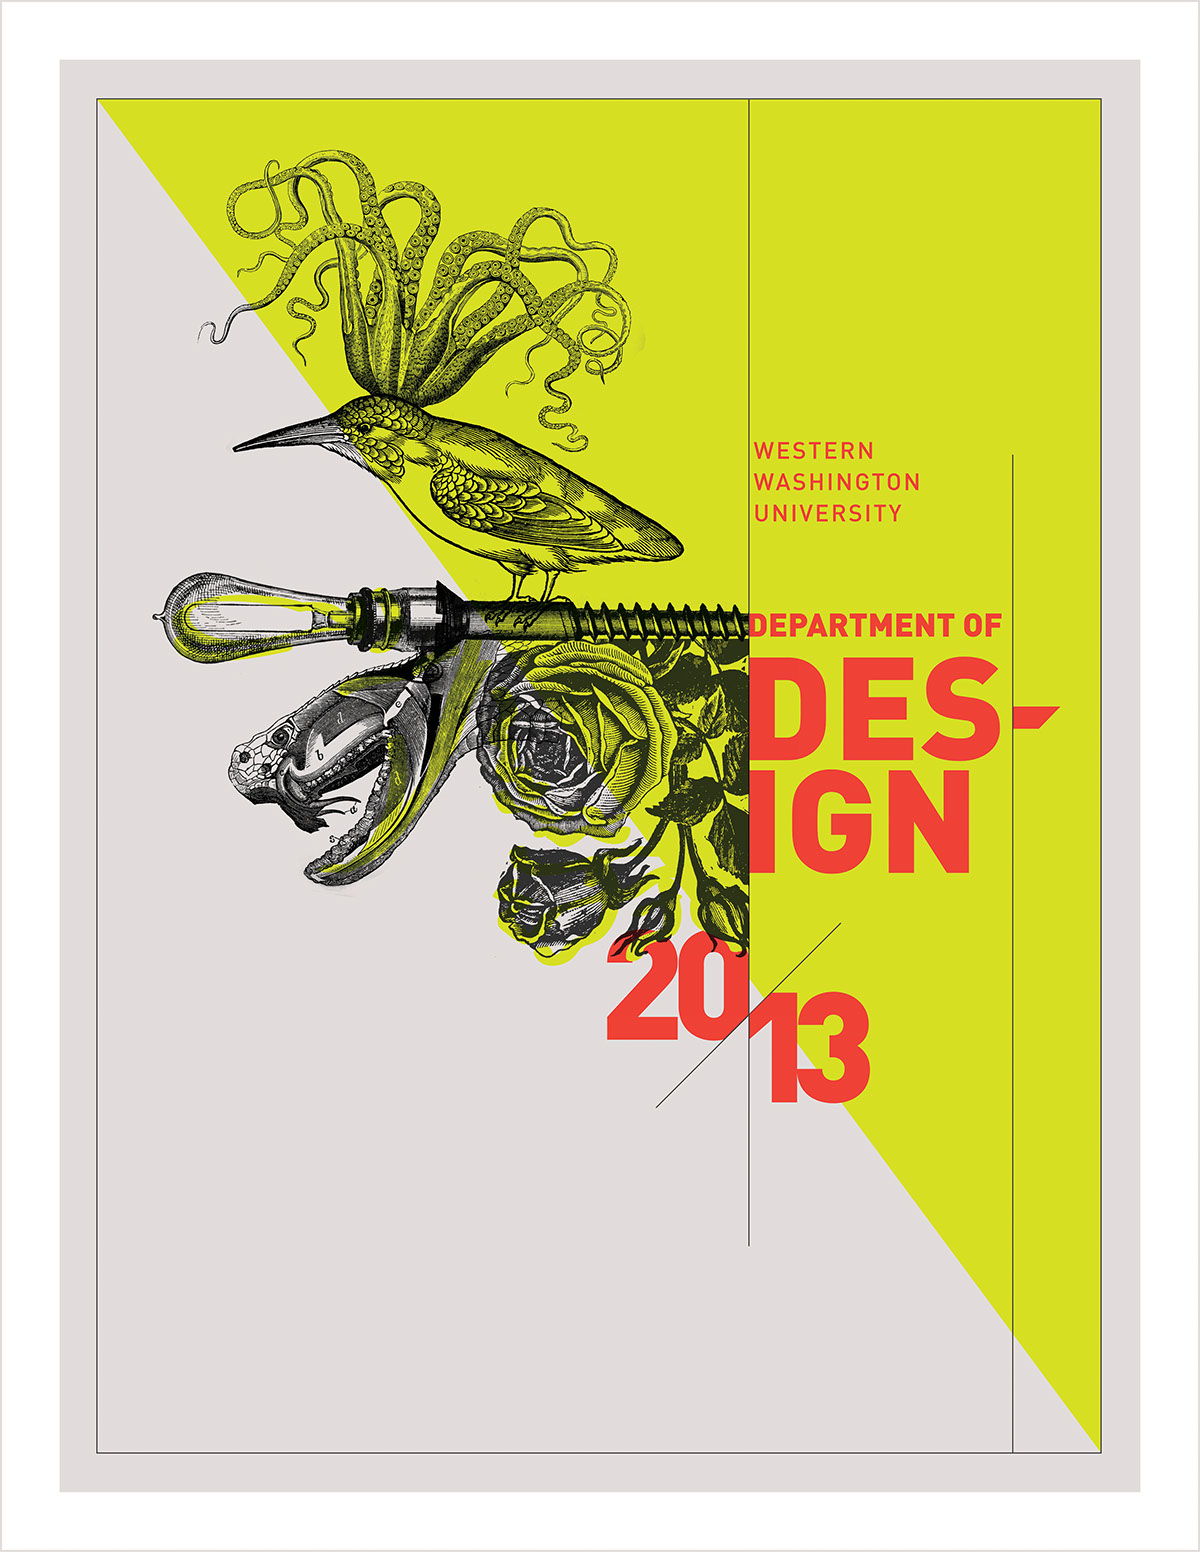 Exhibition  showcase Show design college Event Promotion Invitation postcard copywrite identity brand neon bright